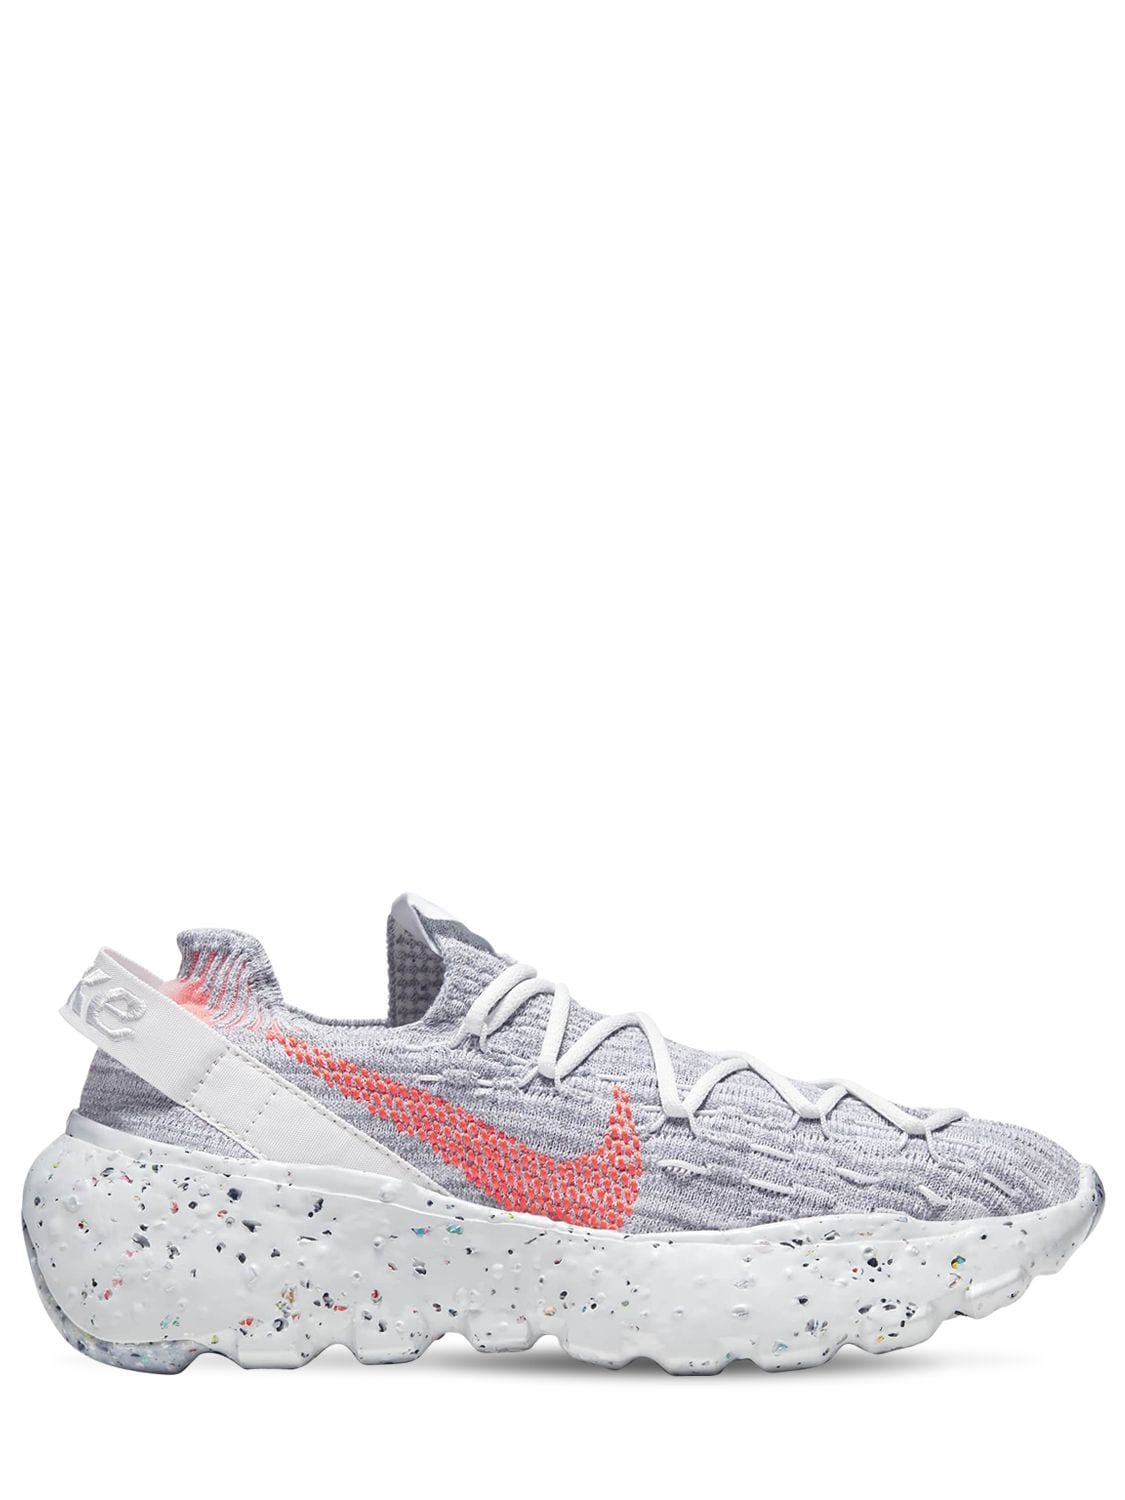 Nike Space Hippie 04 Sneakers In Grey